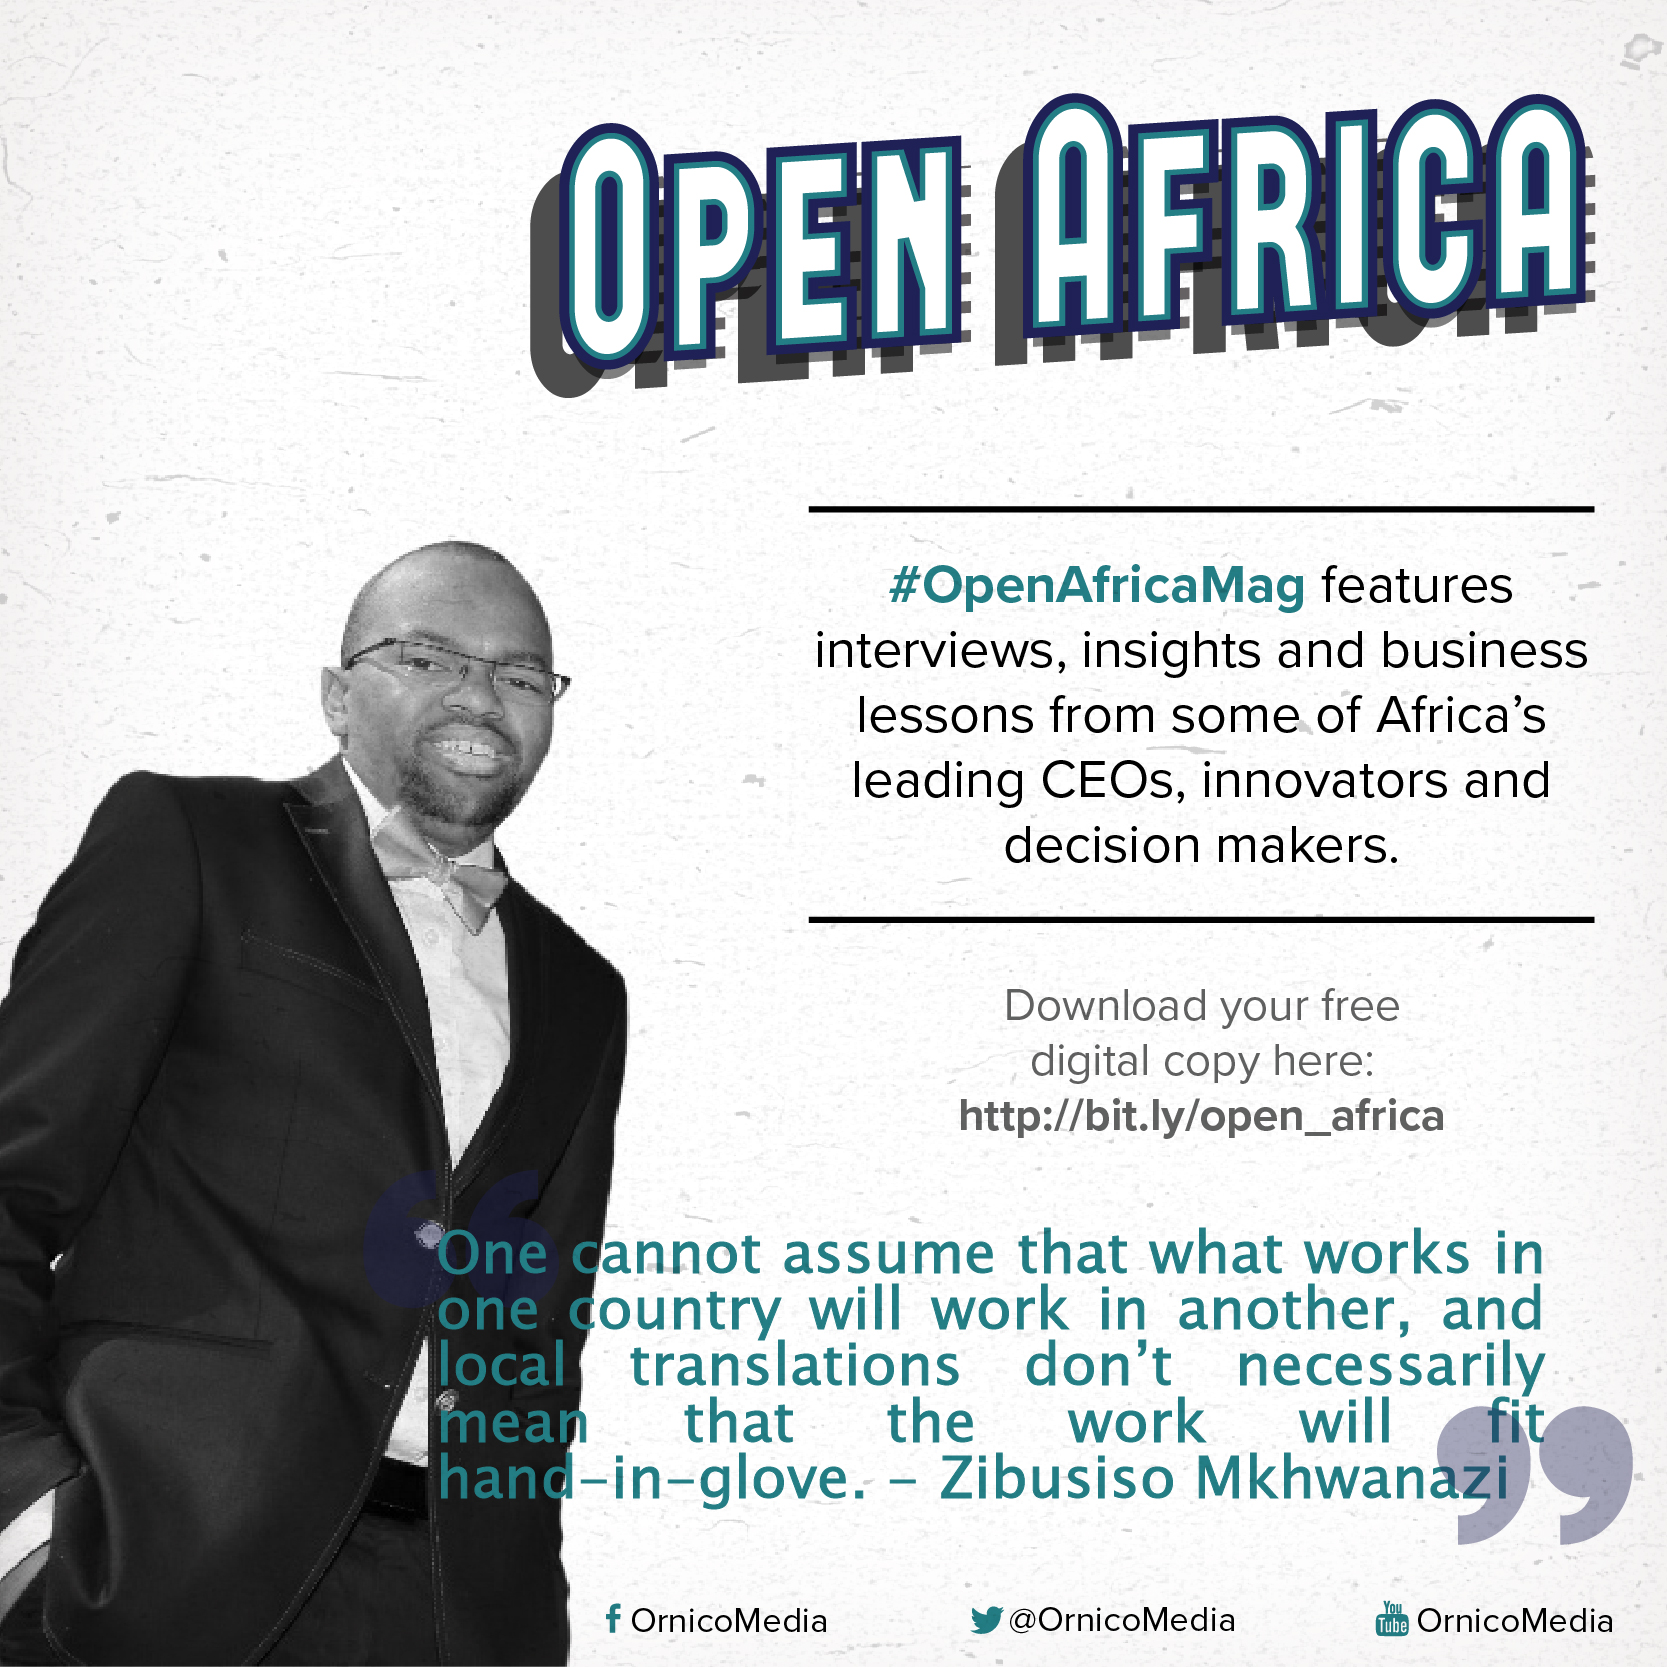 Zibusiso Mkhwanazi on #OpenAfricaMag